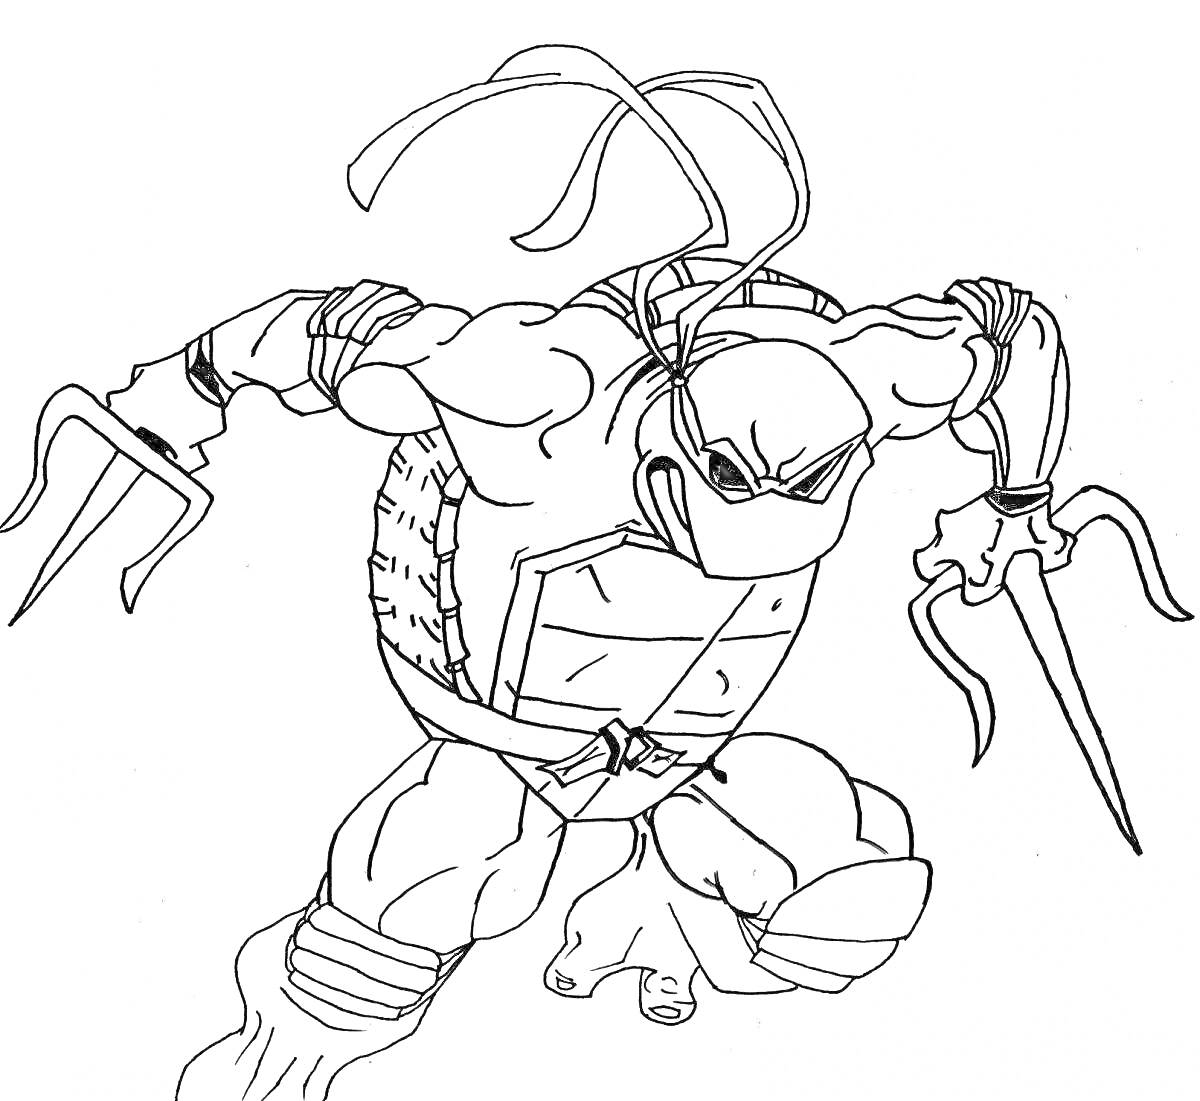 Раскраска Человек-амфибия с тремя пальцами, с двумя кинжалами, в маске, с панцирем, в боевой позе